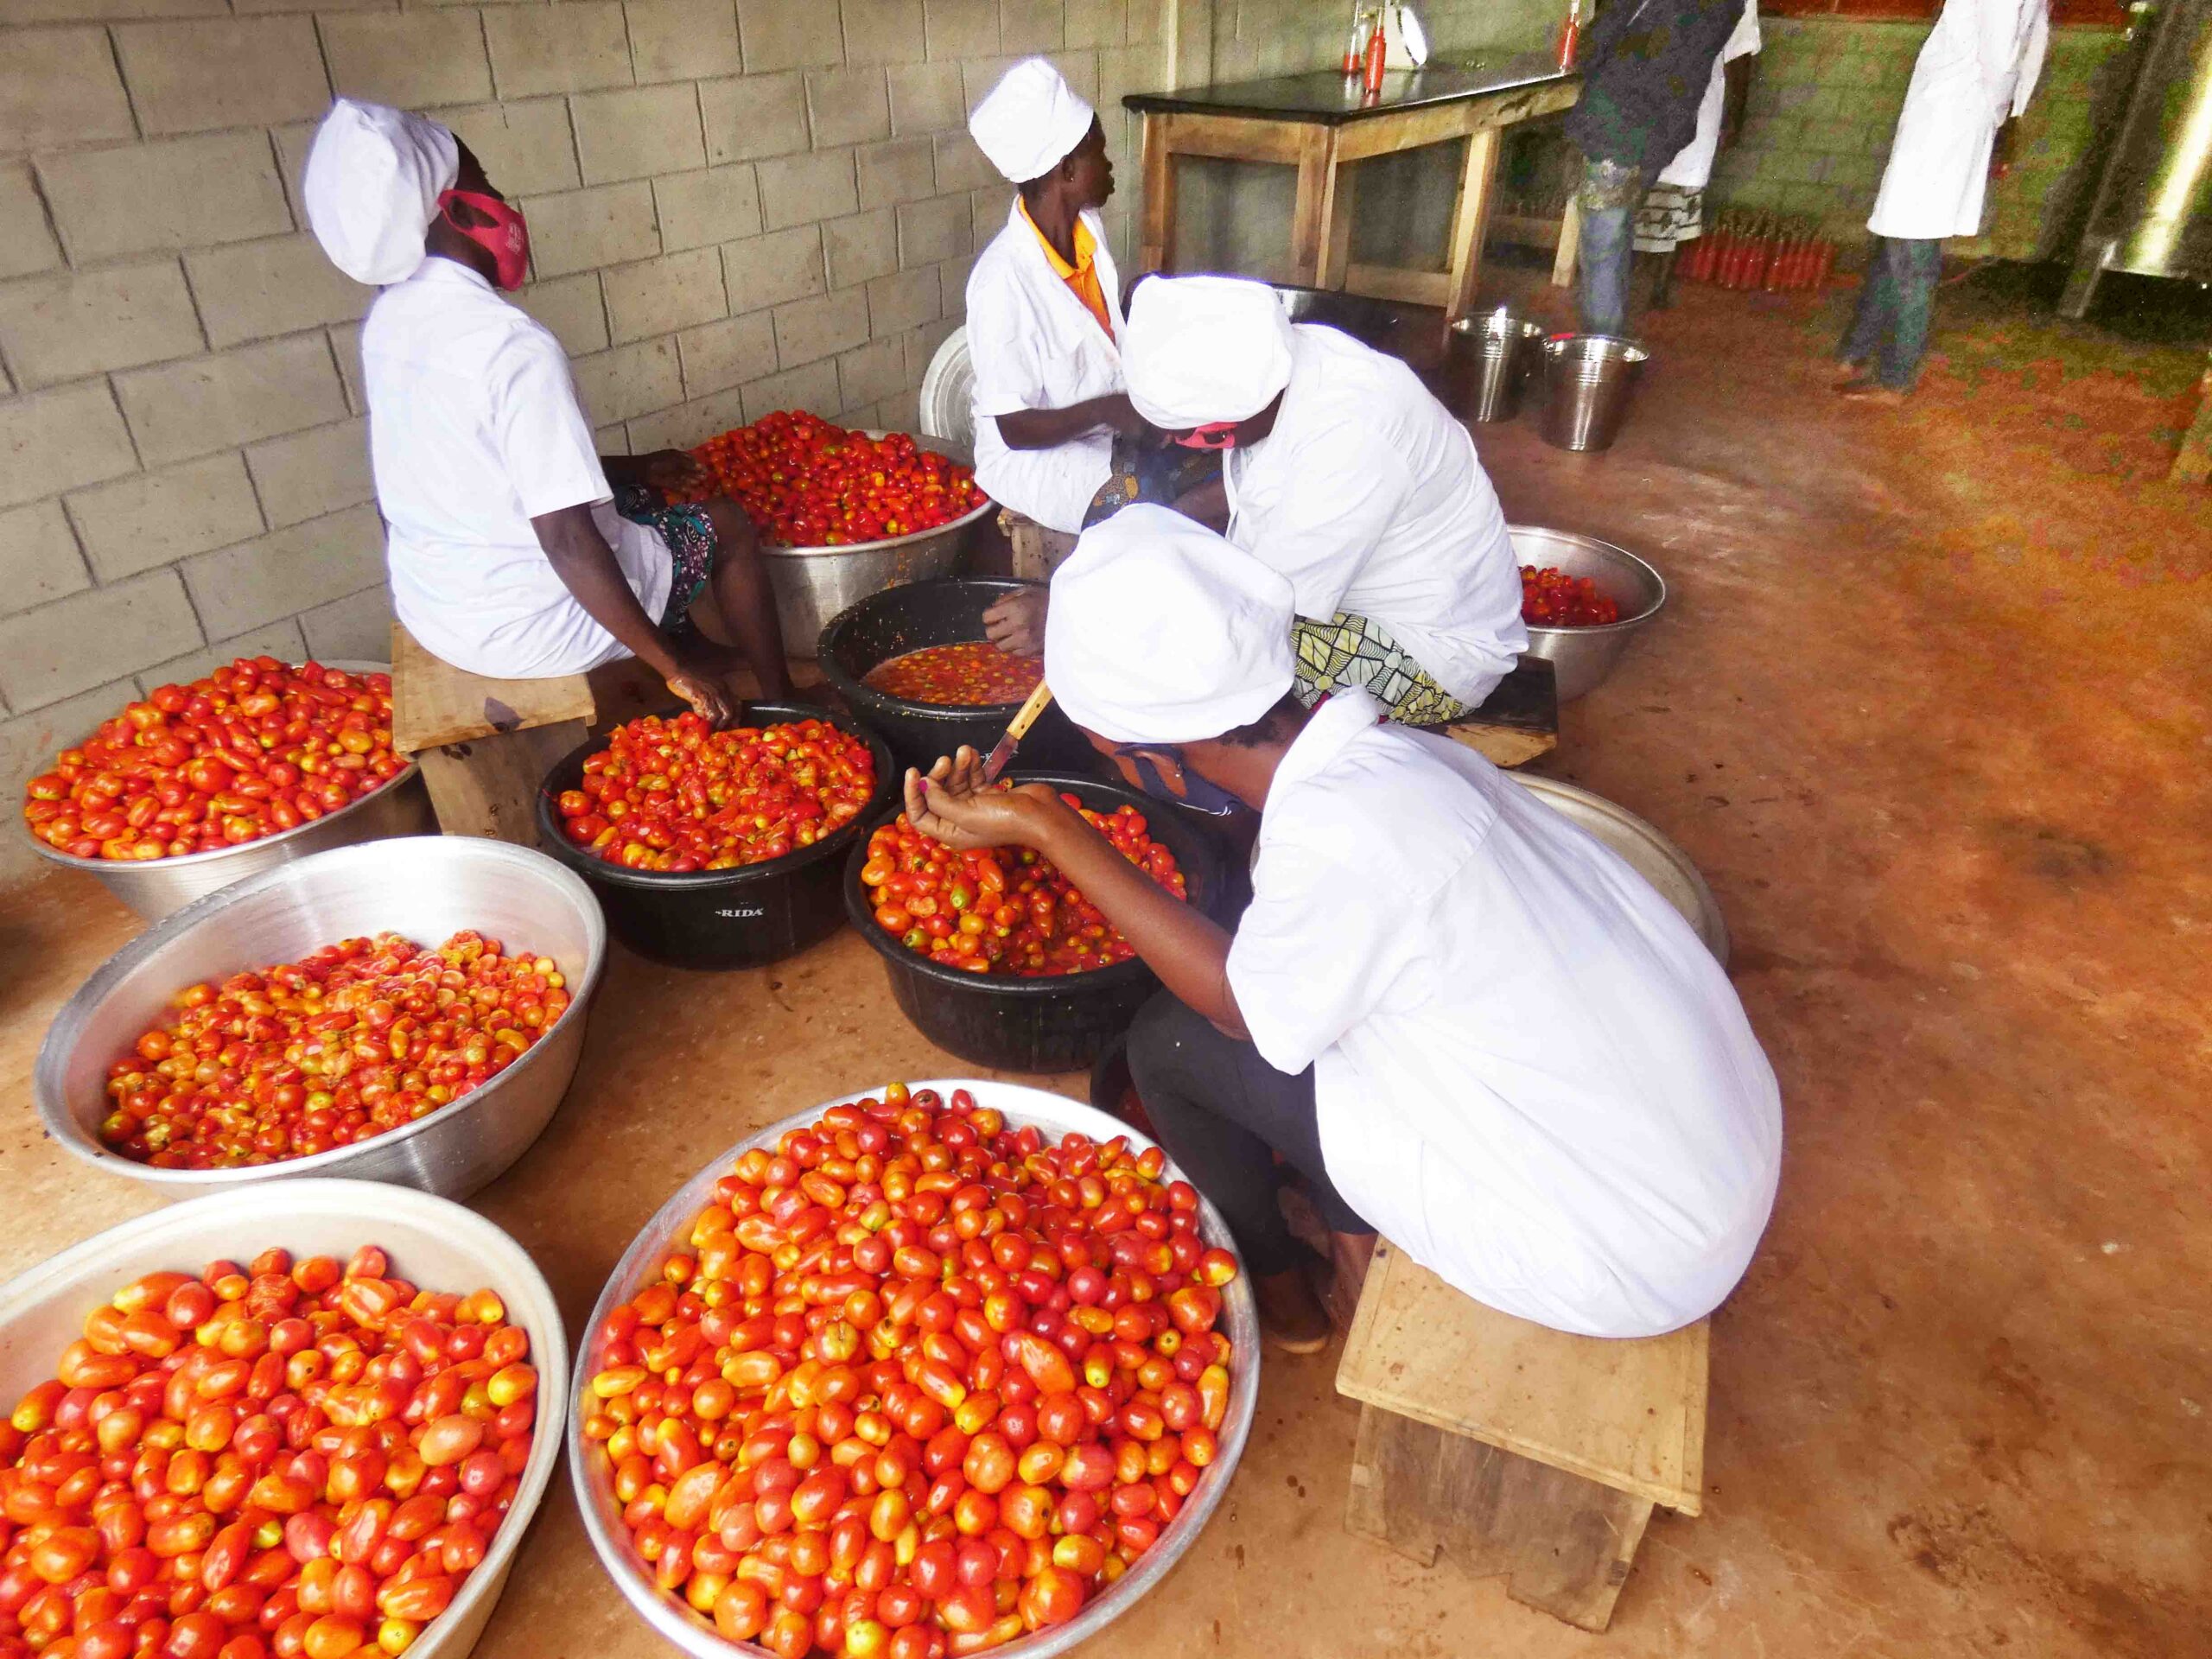 L'ong CRIPADD enseigne des méthodes de conserves de tomates à Kpomassè pour valoriser les surplus